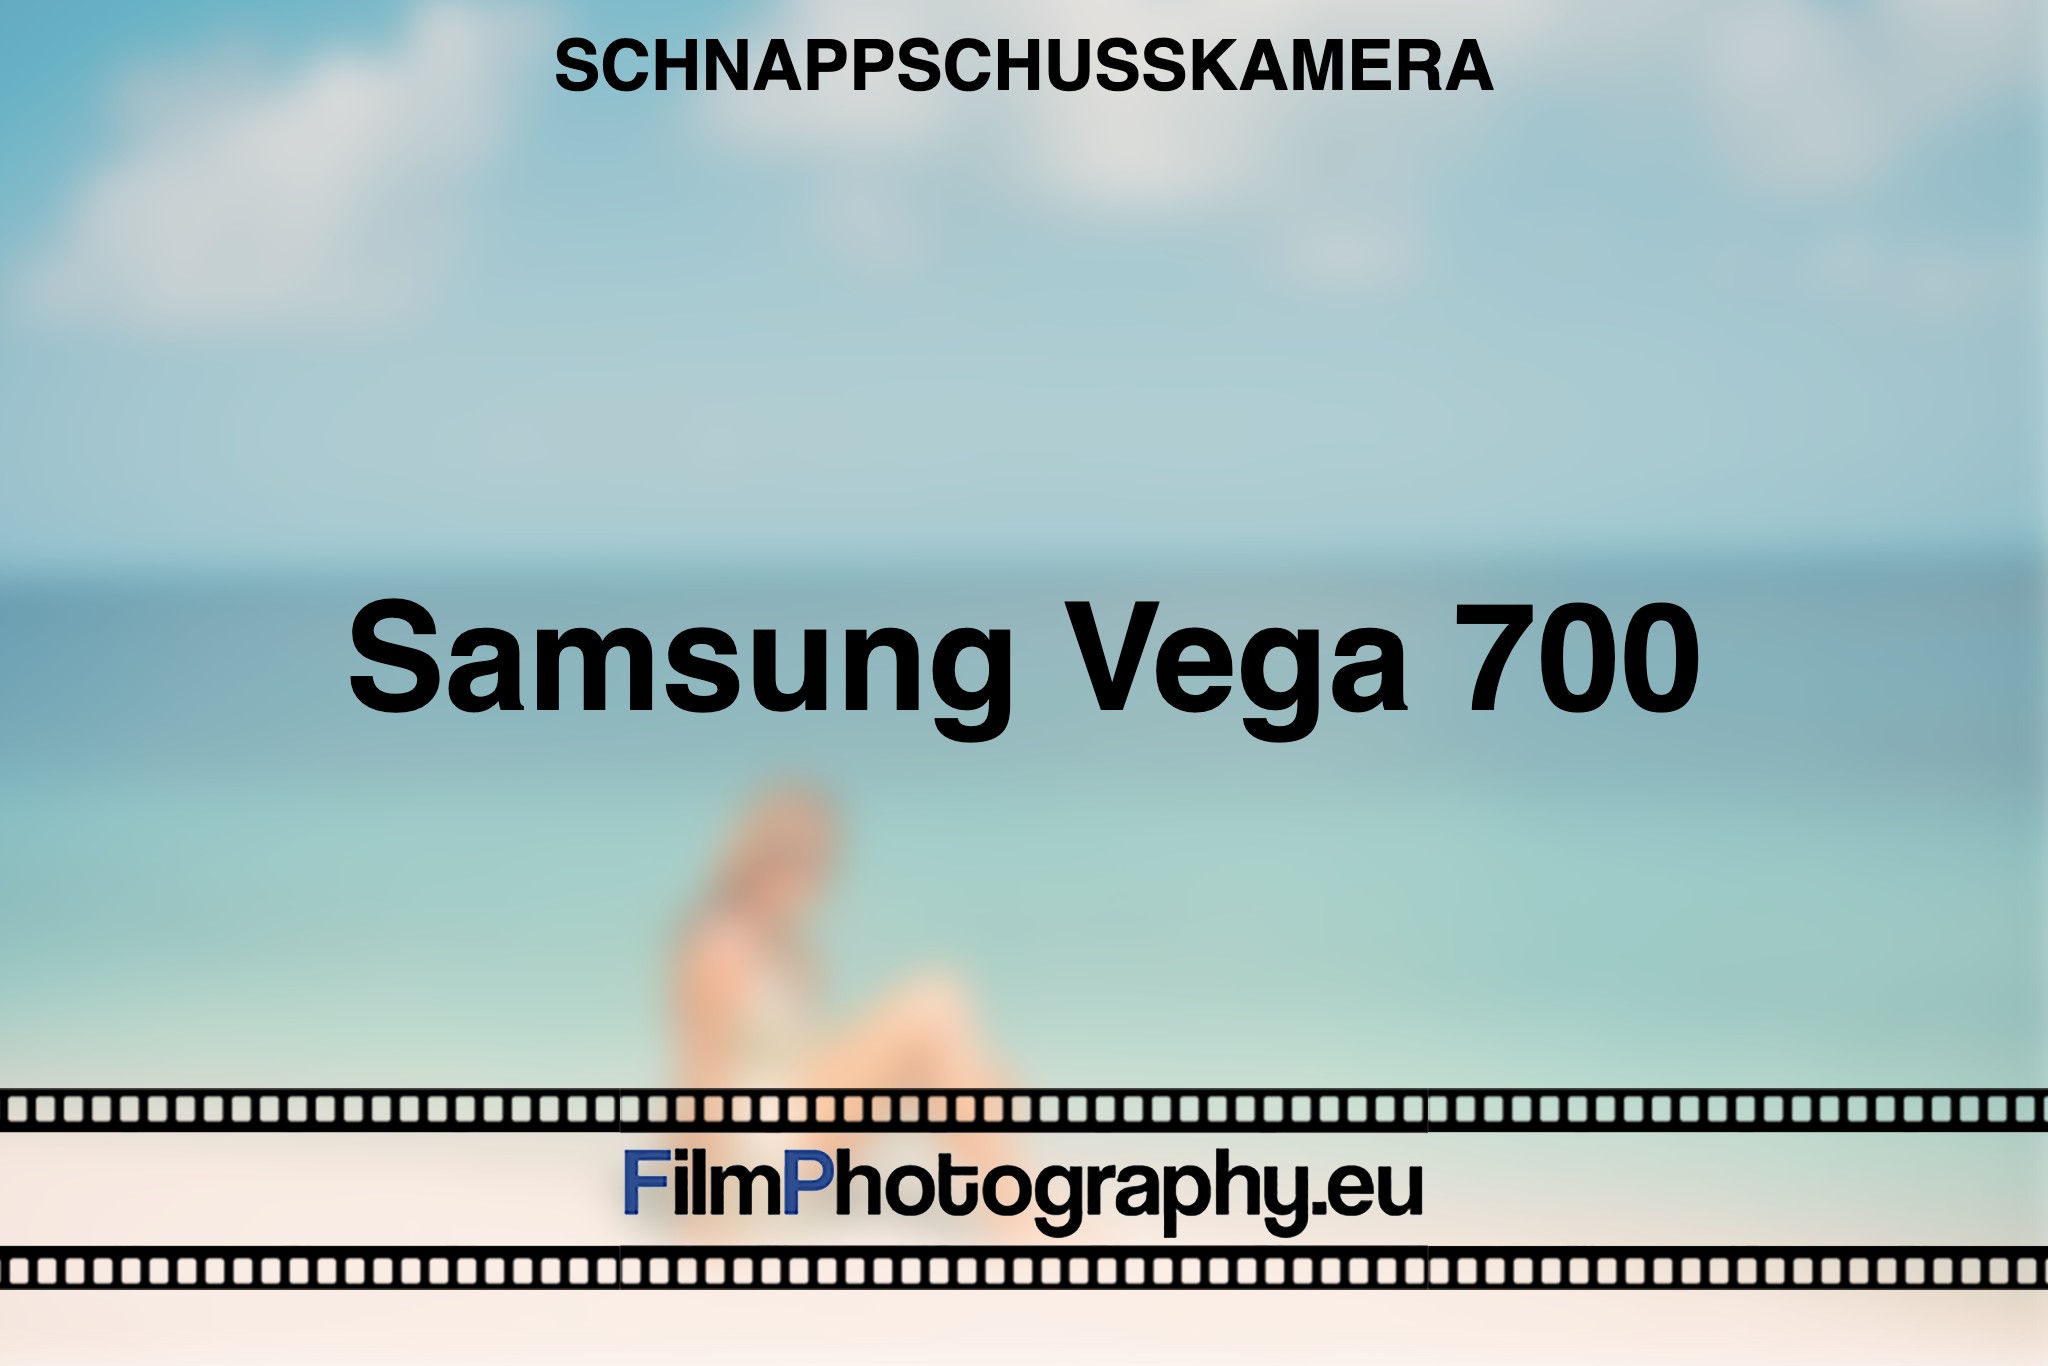 samsung-vega-700-schnappschusskamera-bnv